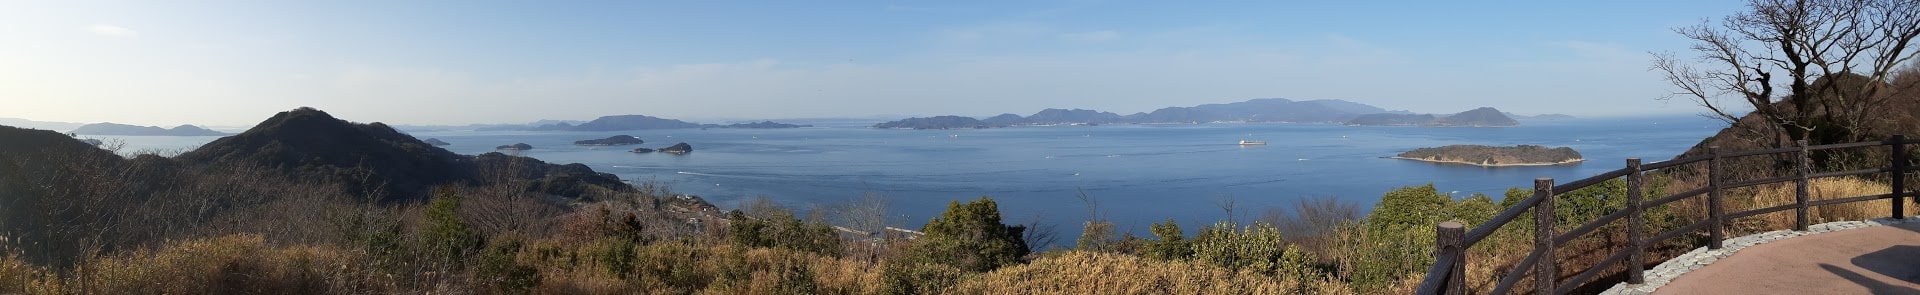 あじ竜王山公園から瀬戸内海をパノラマ撮影